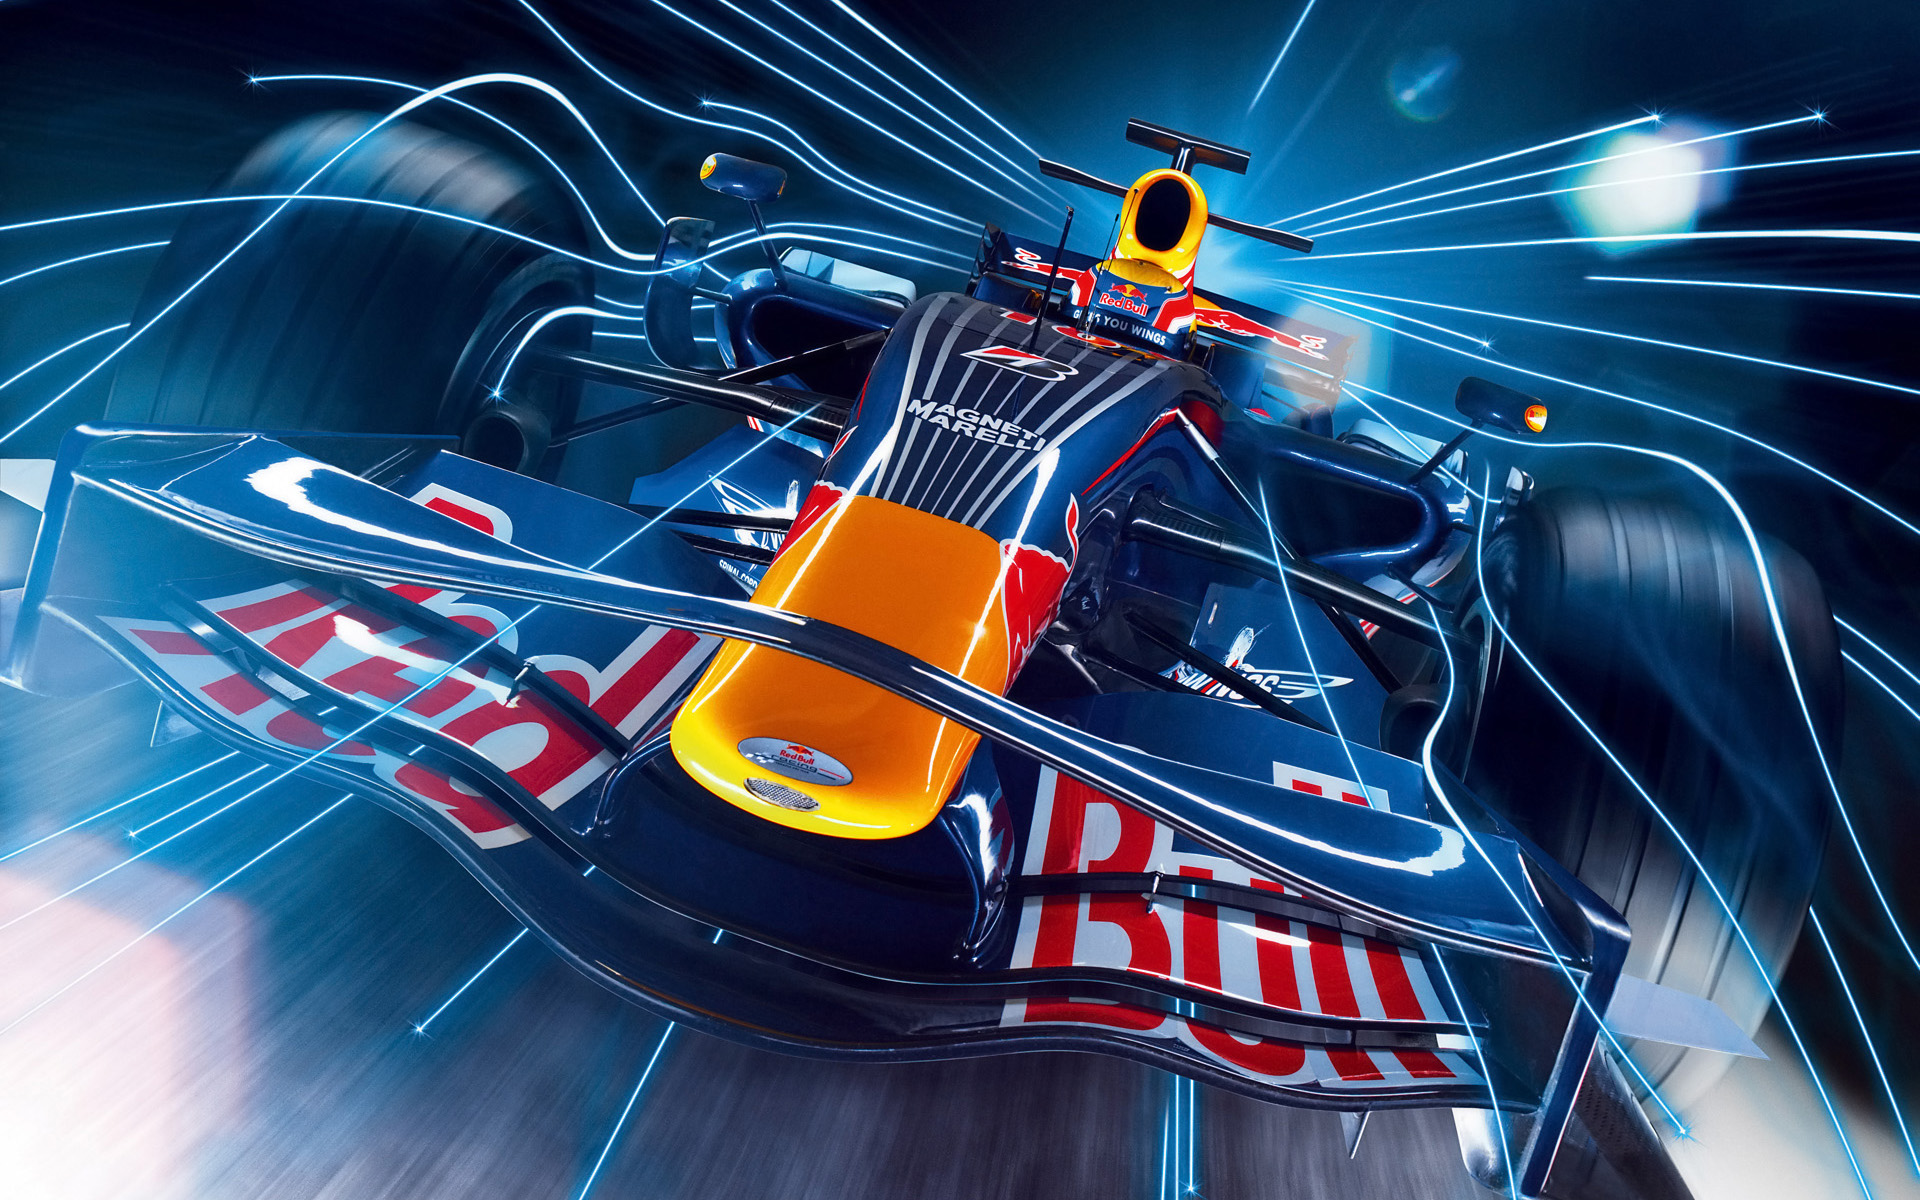  2008 Red Bull Racing RB4  Wallpaper.